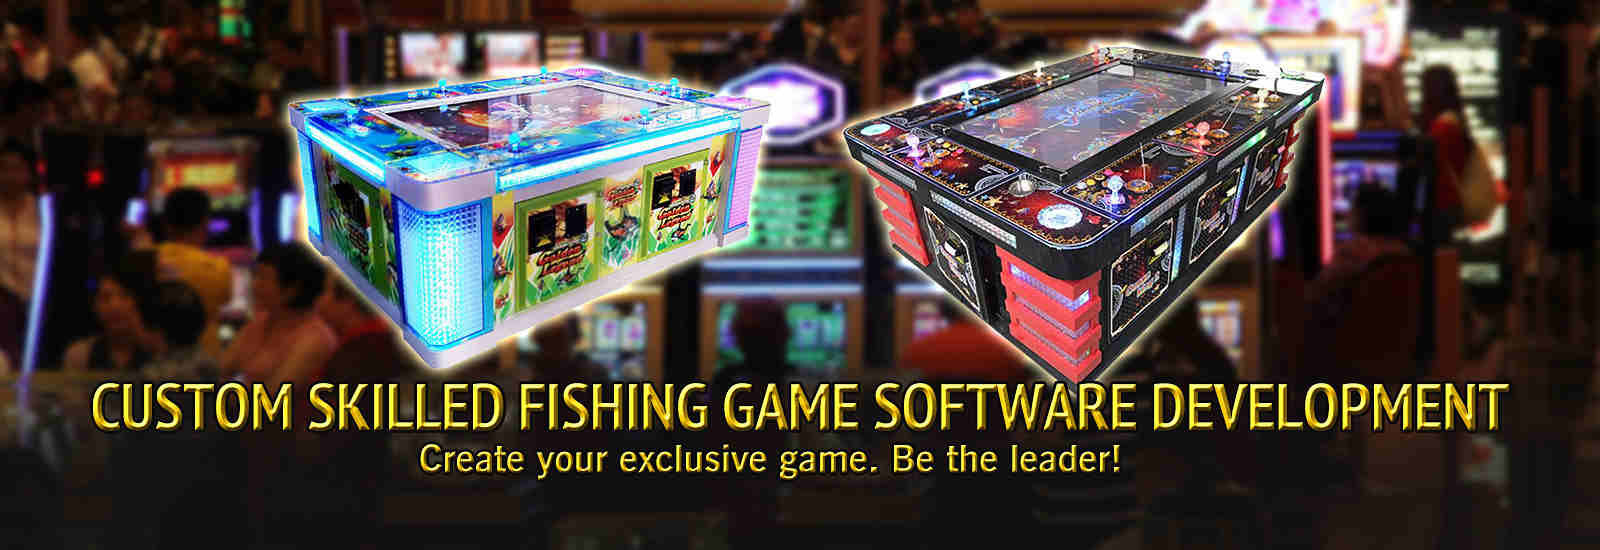 jakość Fish Arcade Arcade Machine fabryka